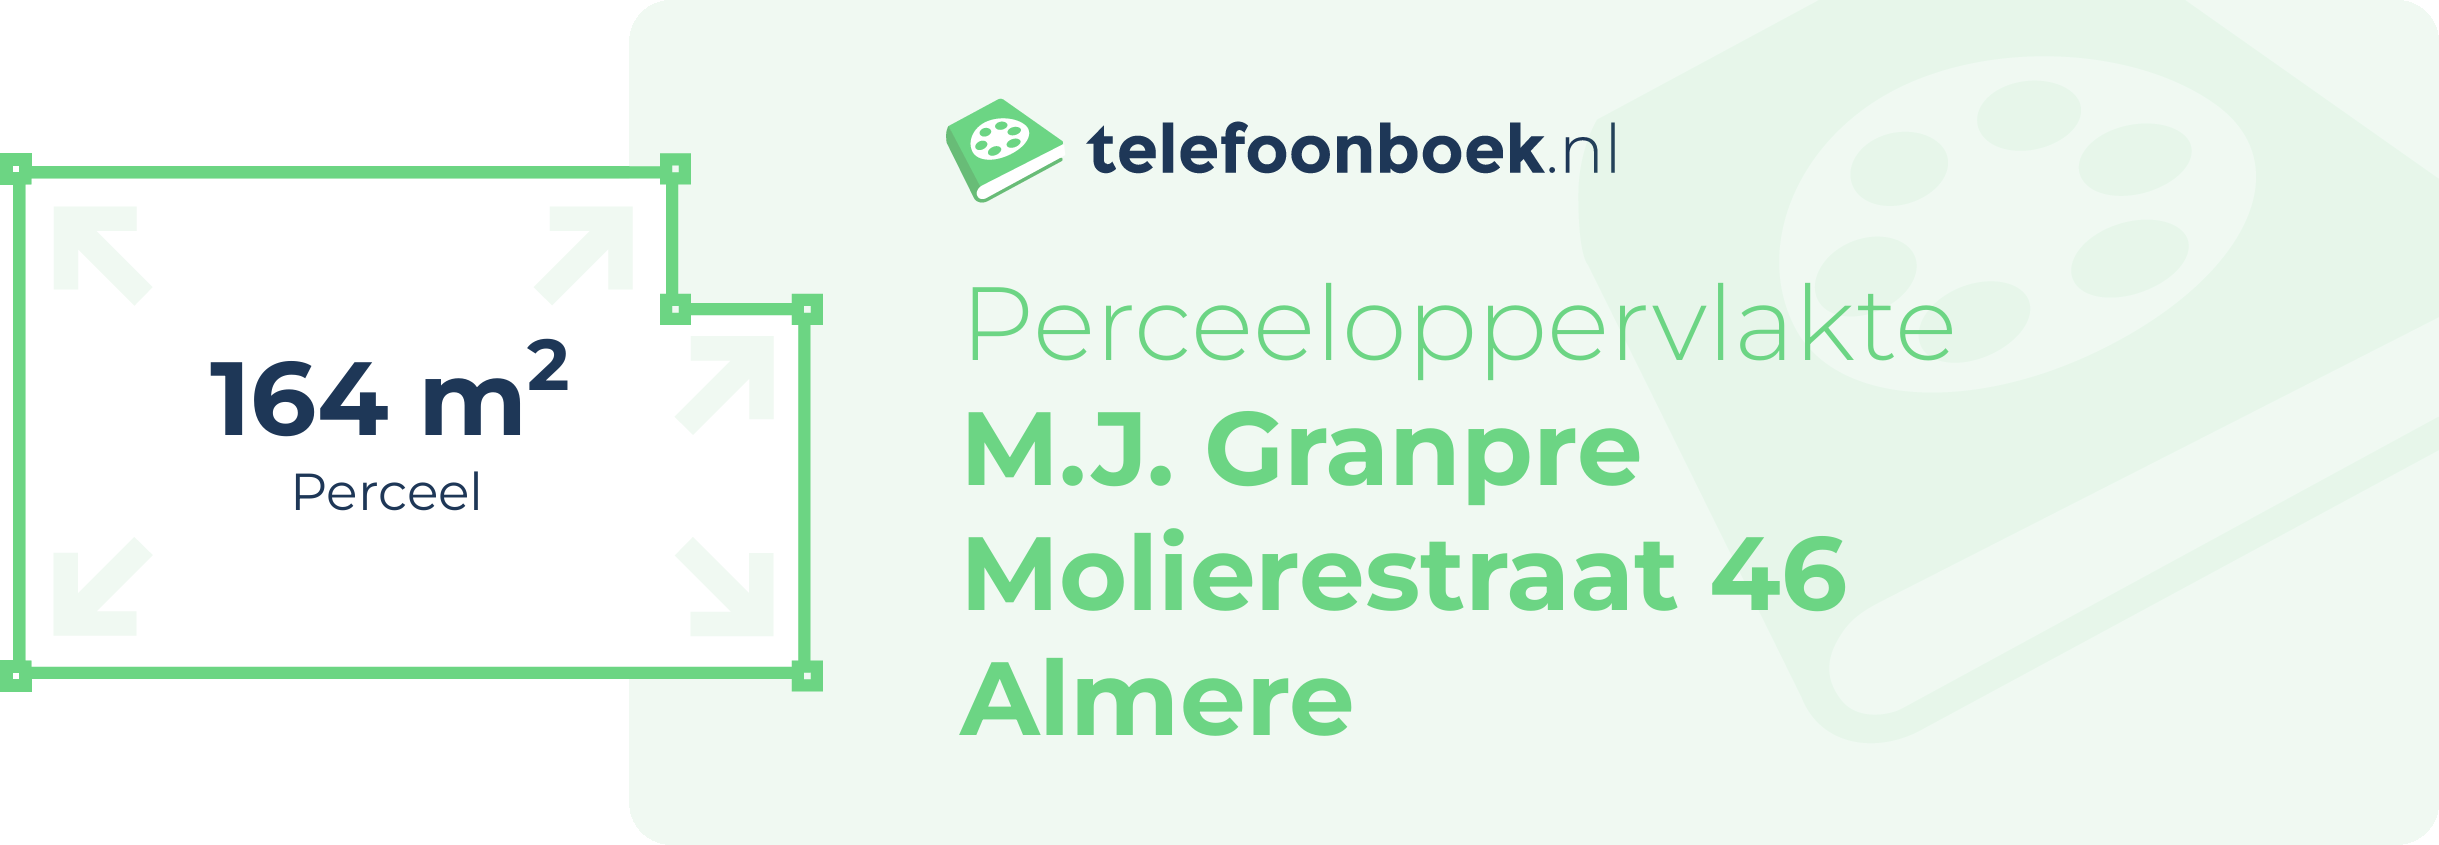 Perceeloppervlakte M.J. Granpre Molierestraat 46 Almere